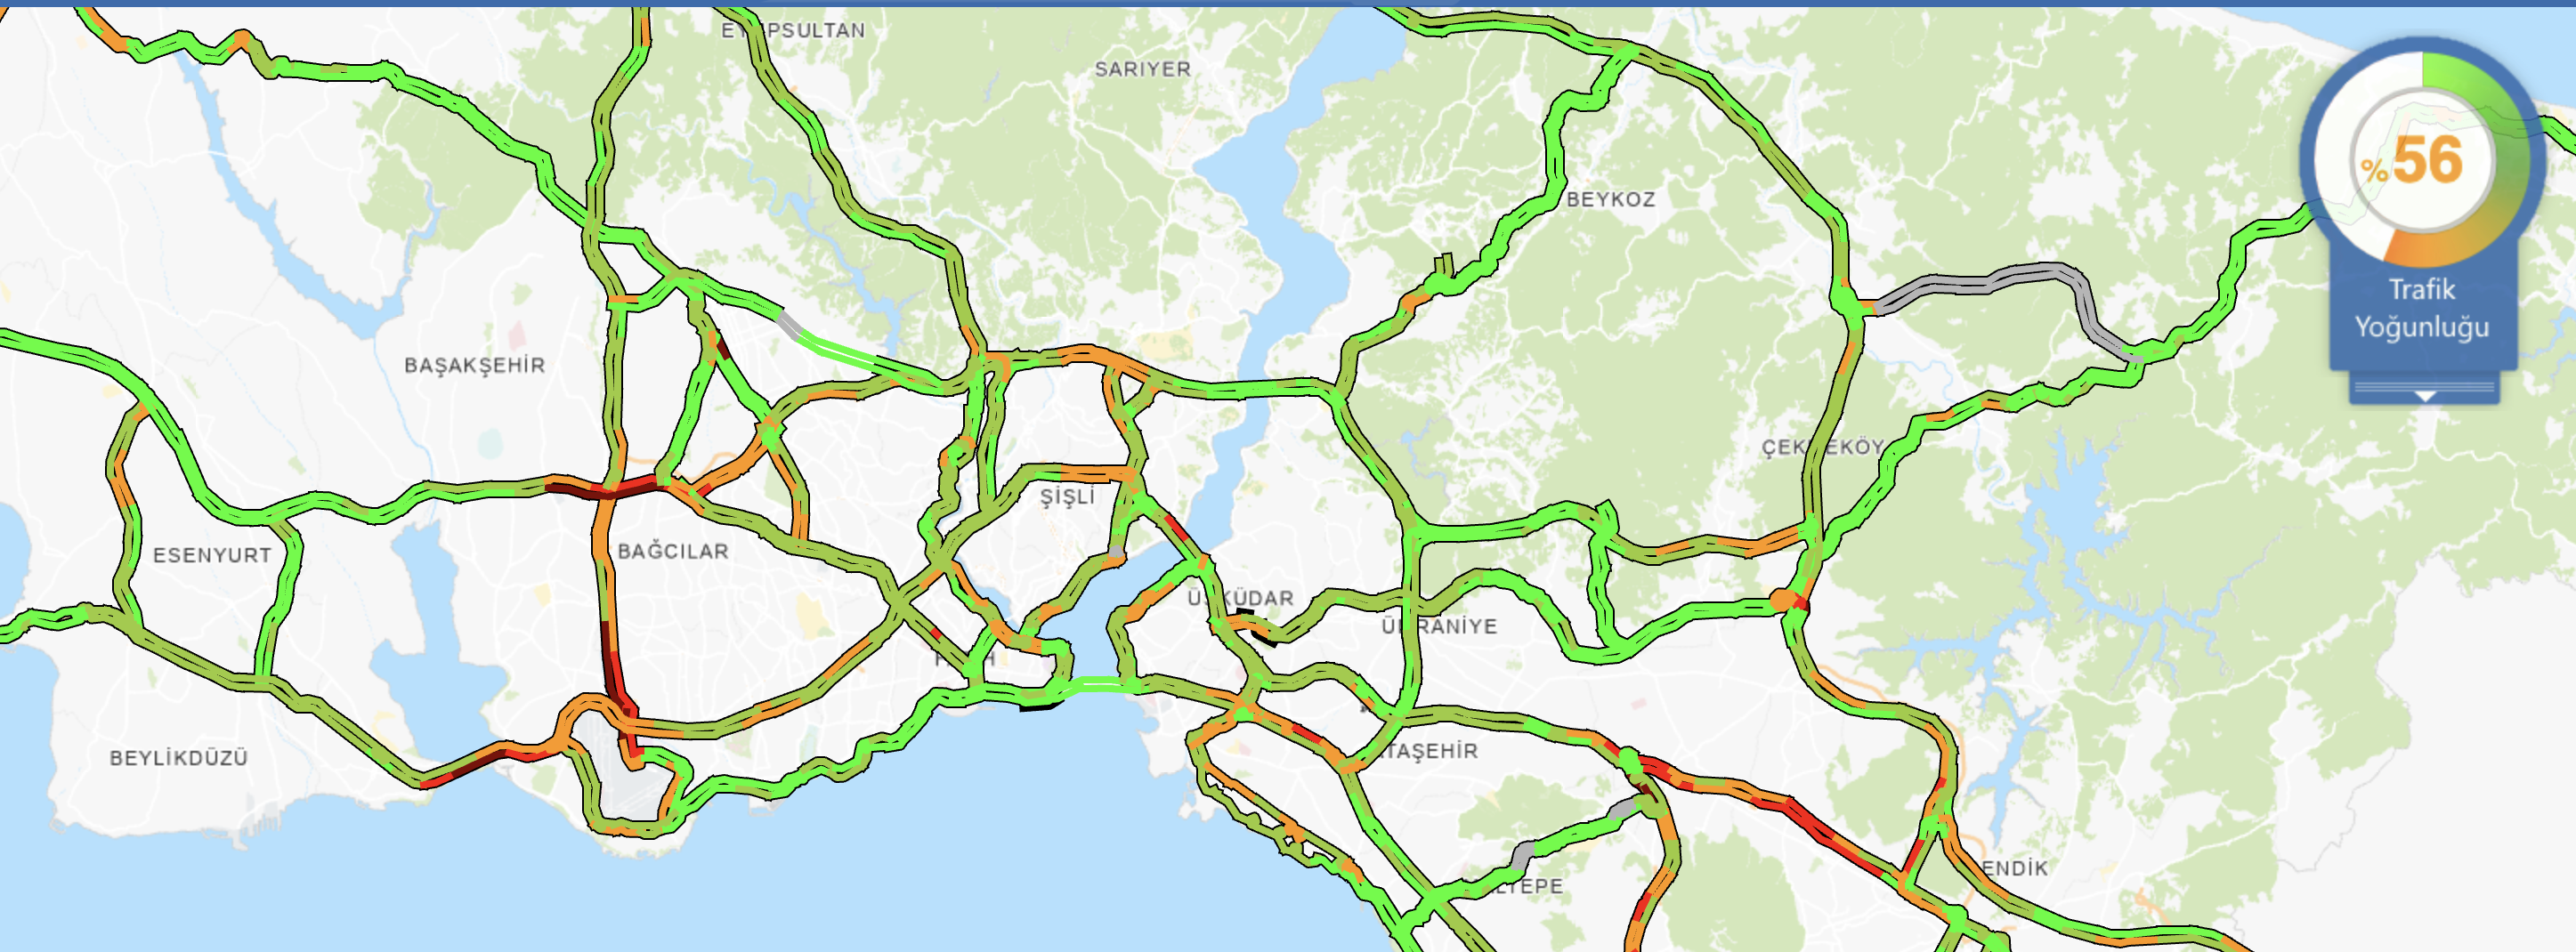 Kar yağışı tesirini sürdüyor; İstanbul trafiğinde son durum ne?